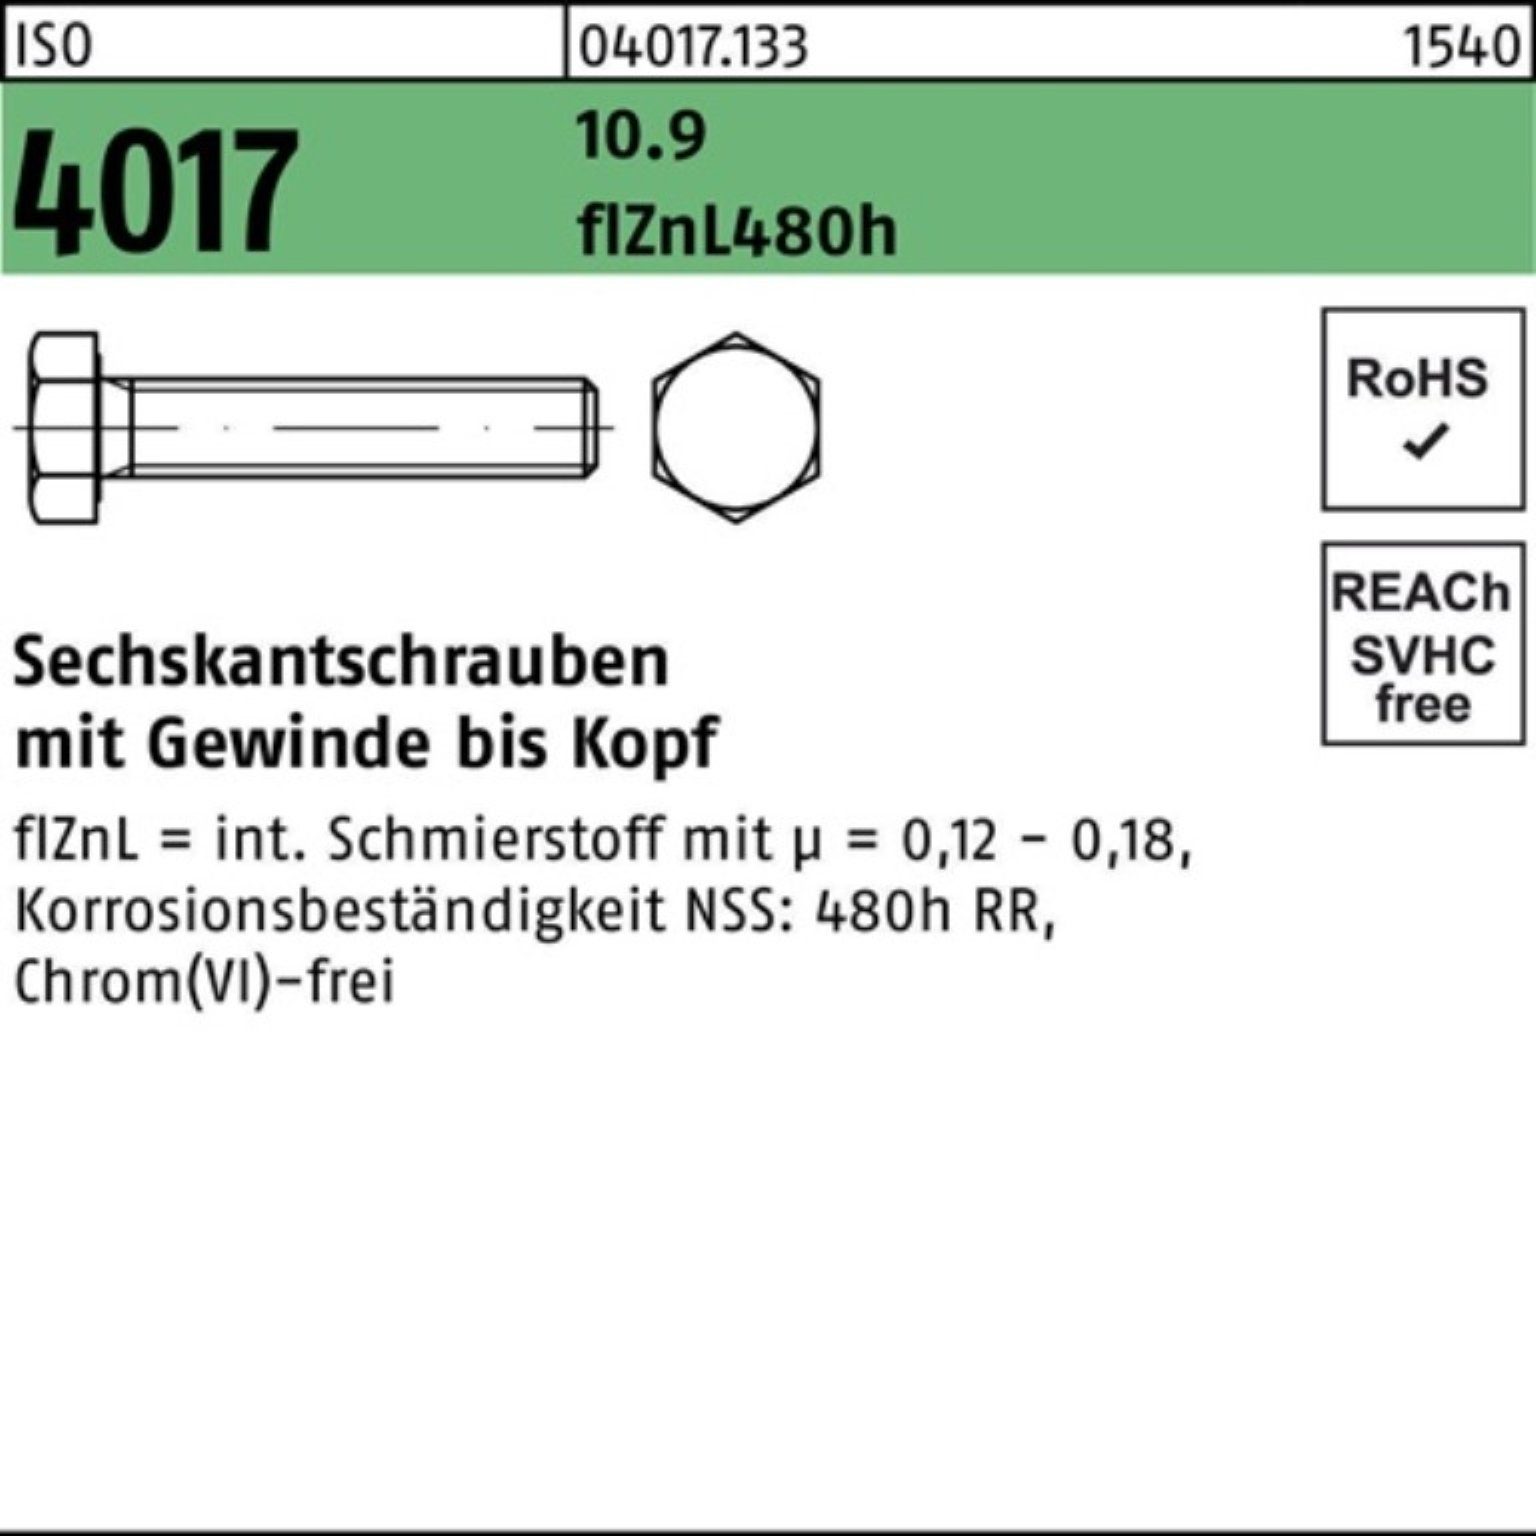 ISO Sechskantschraube 10.9 200er 2 VG M10x zinklamellenb. 16 Sechskantschraube 4017 Bufab Pack